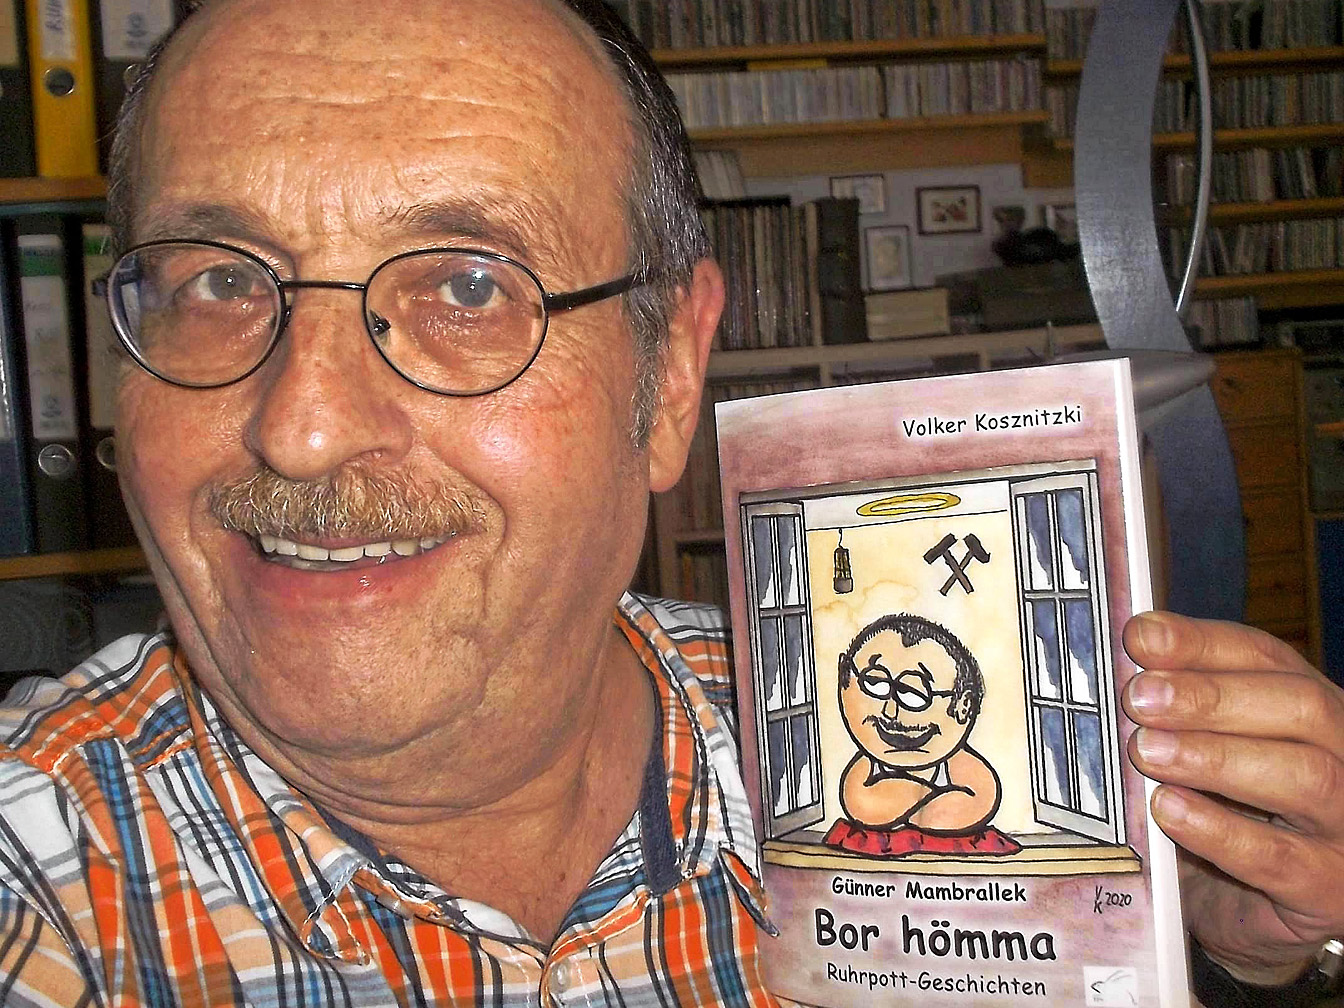 Der Autor Volker Kosznitzki mit einem seiner Bücher